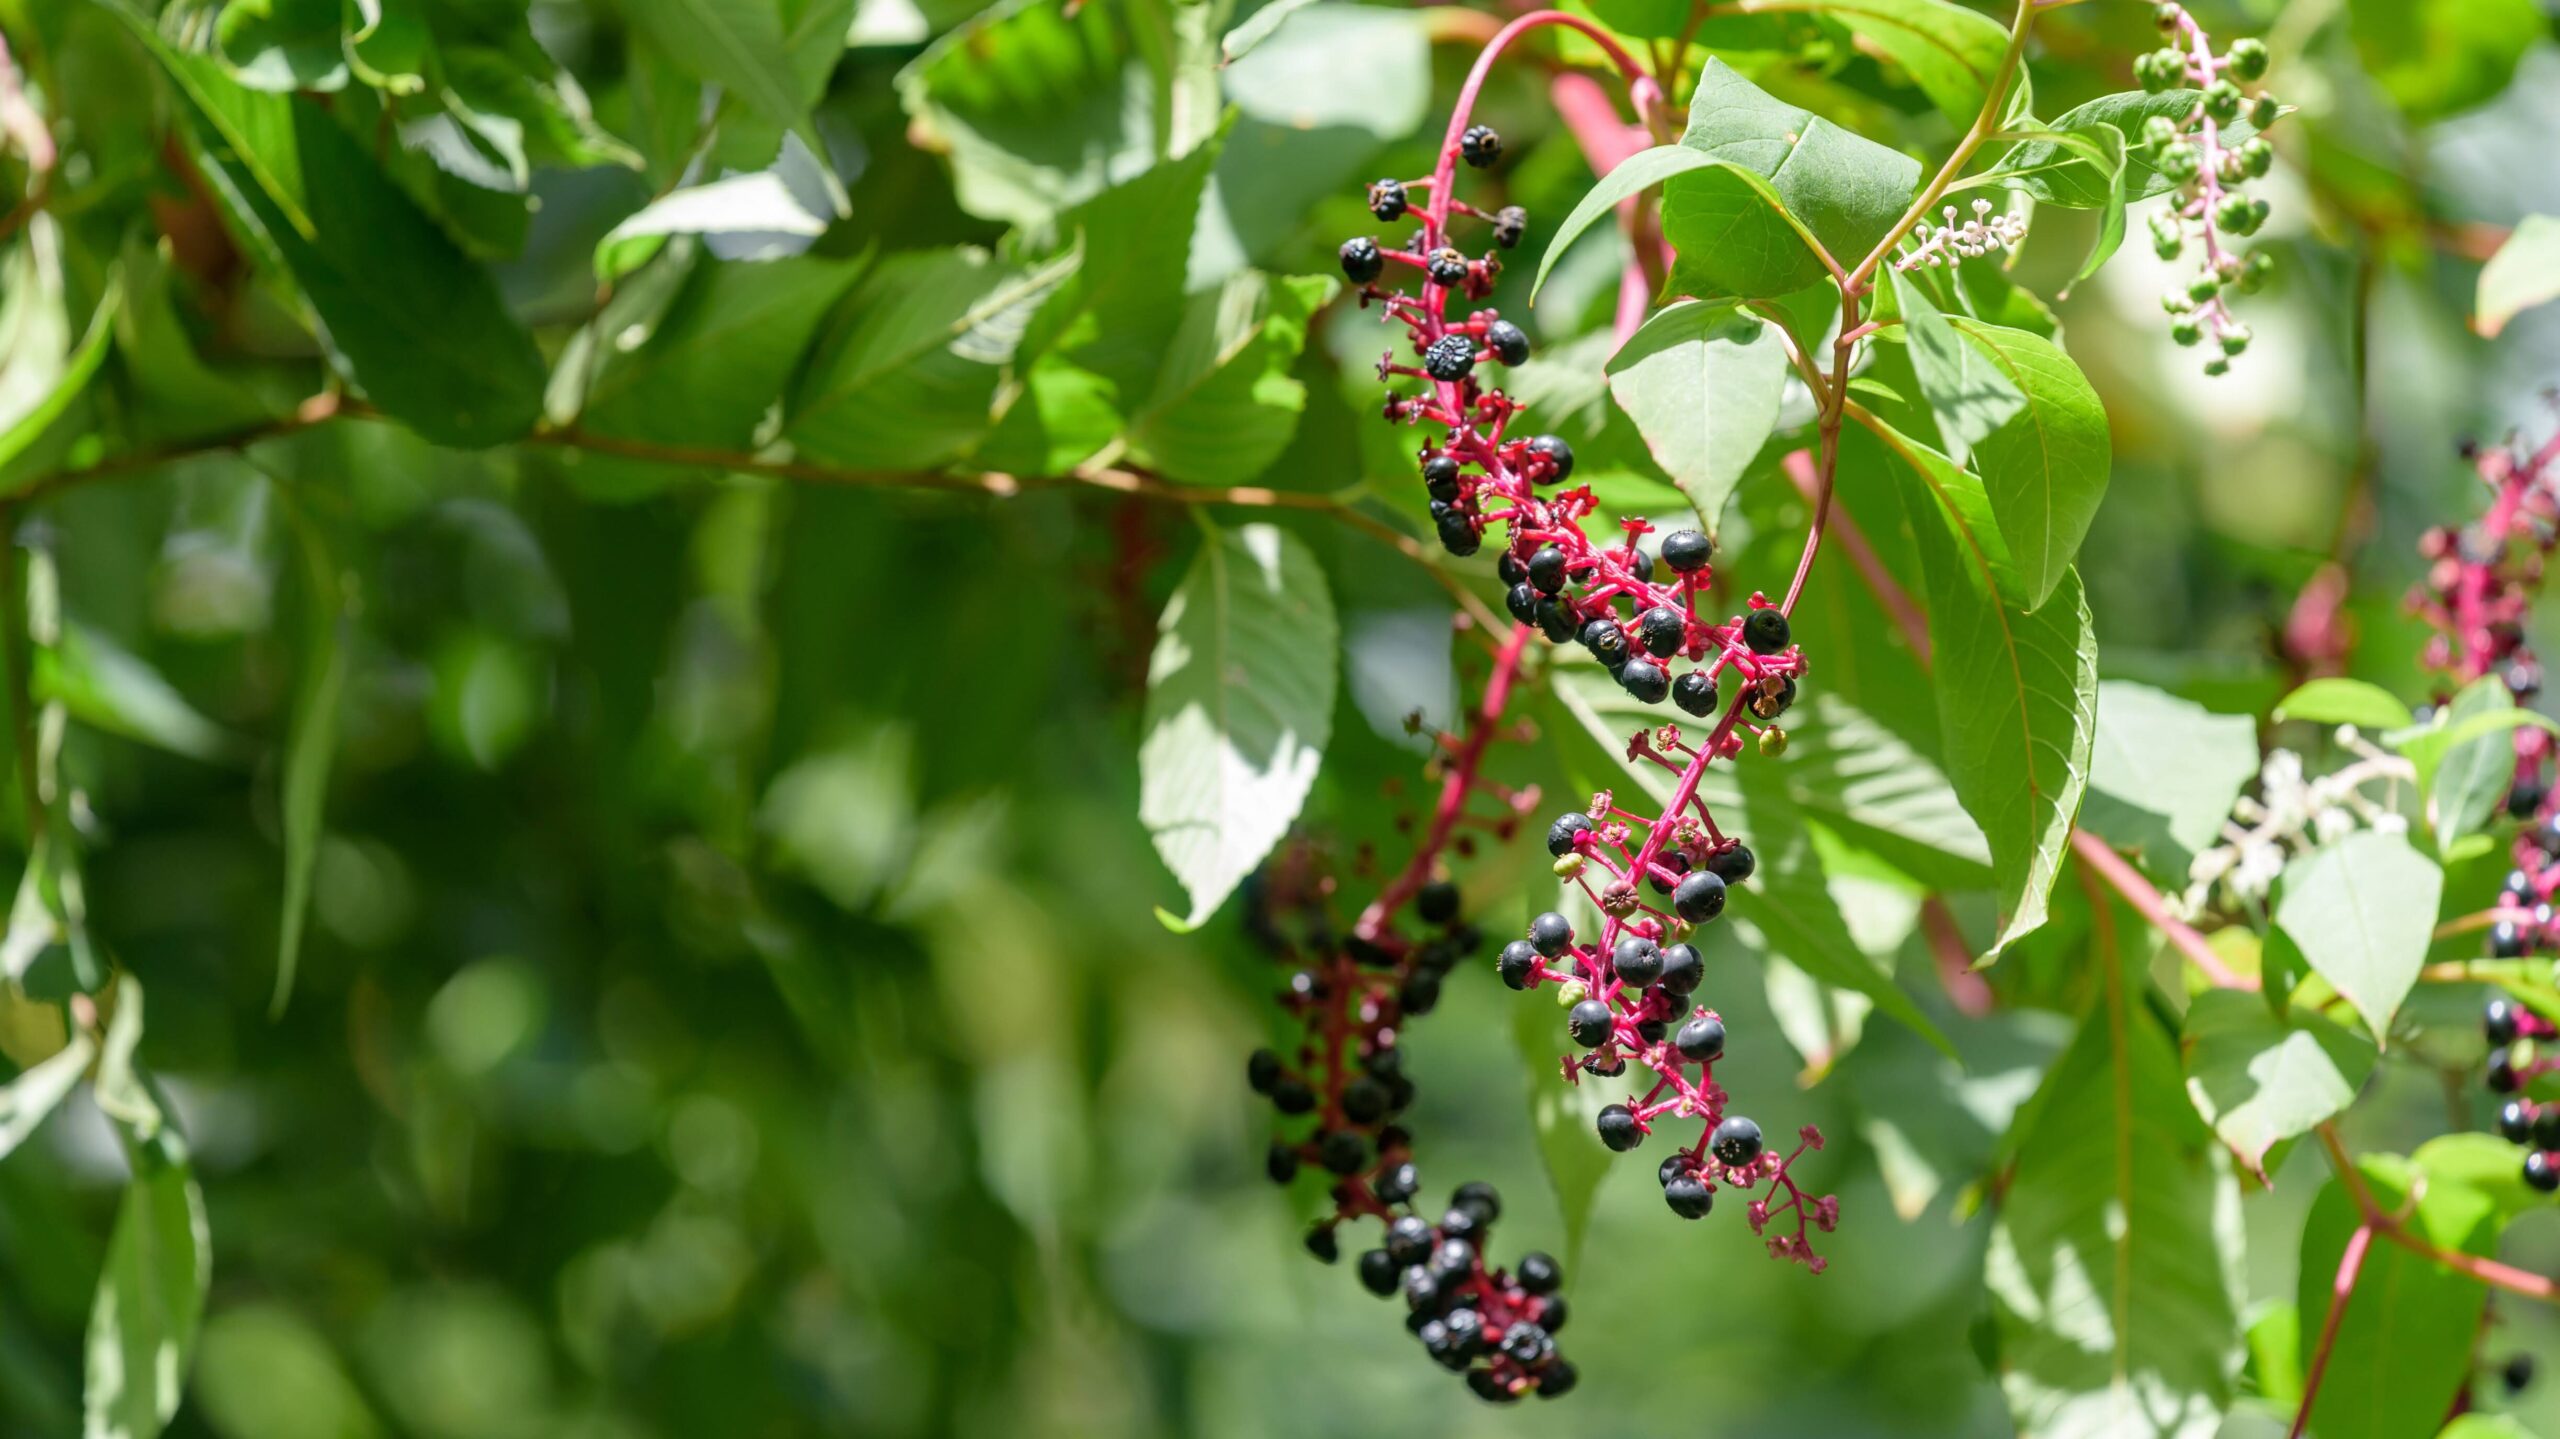  cluster of Pokeweed berries, American pokeweed